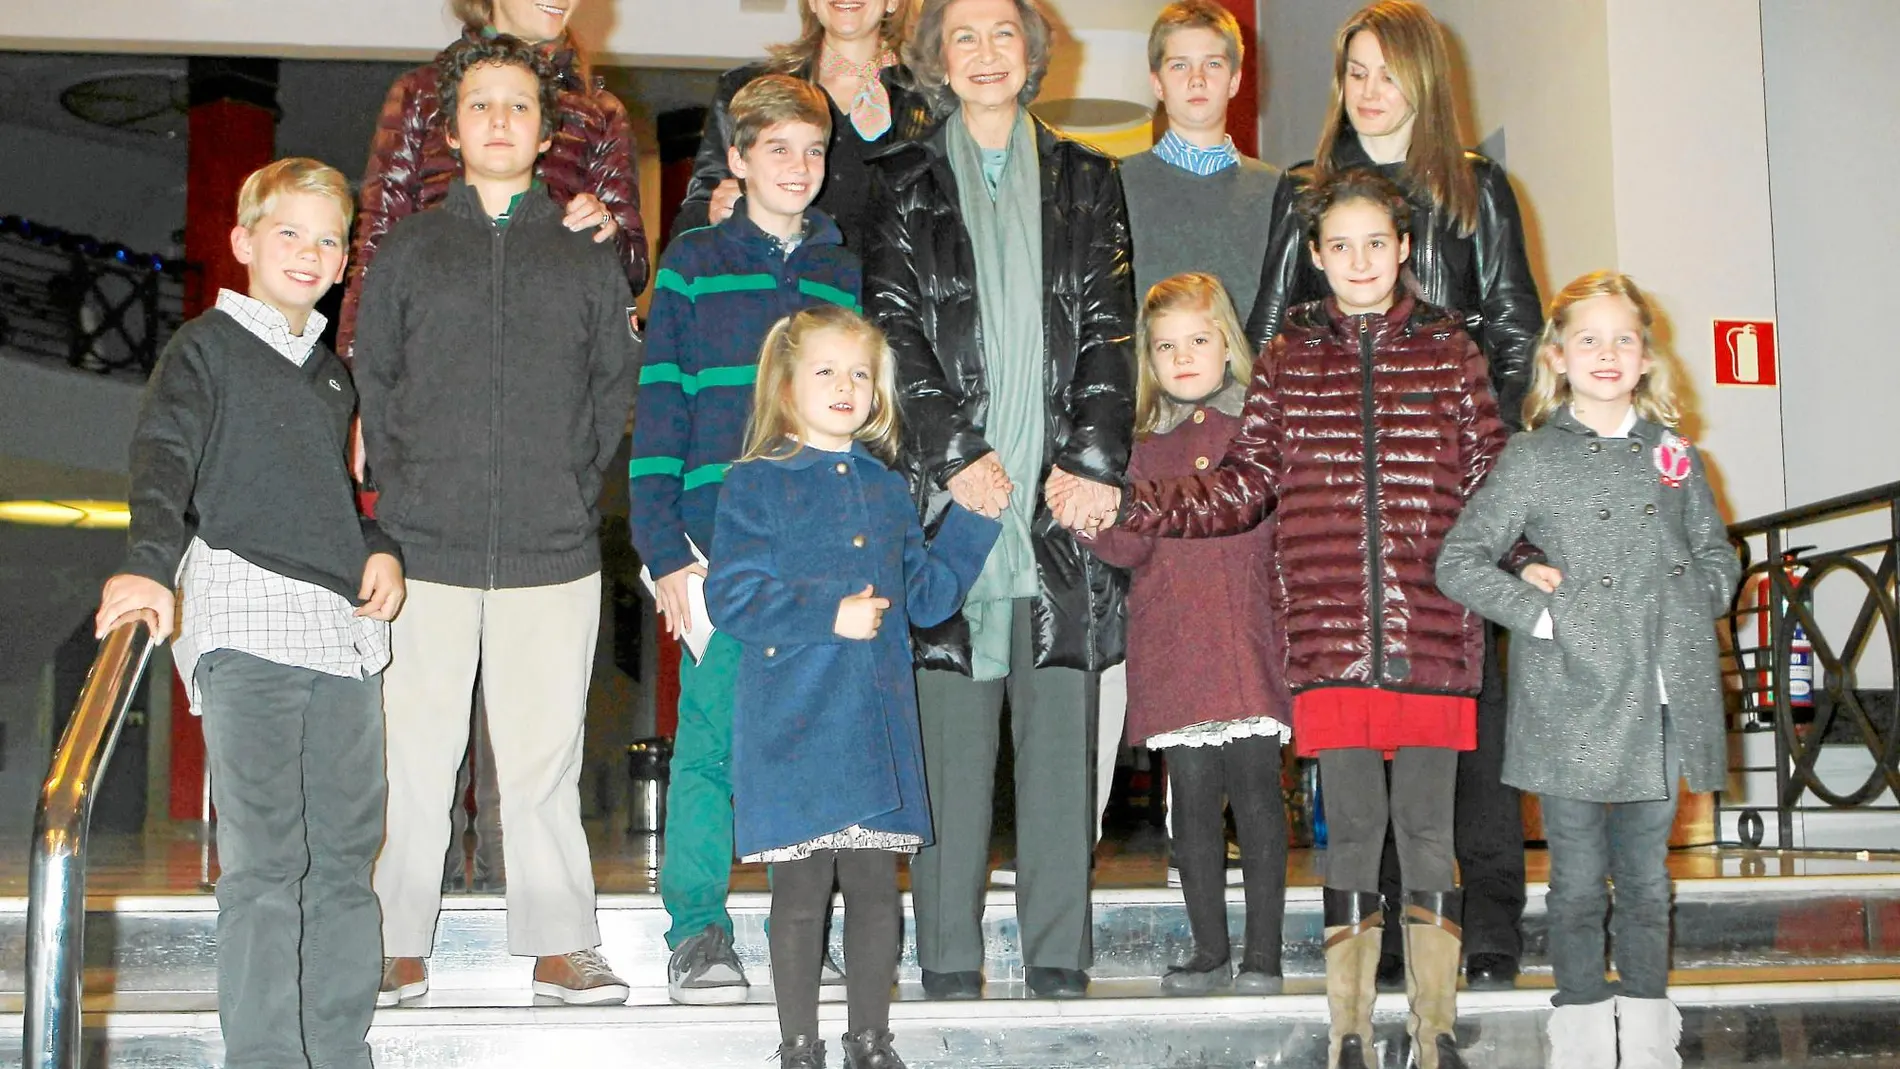 En 2013, en la víspera de Reyes, Doña Sofía salió con sus nietos y sus dos madres a ver un musical